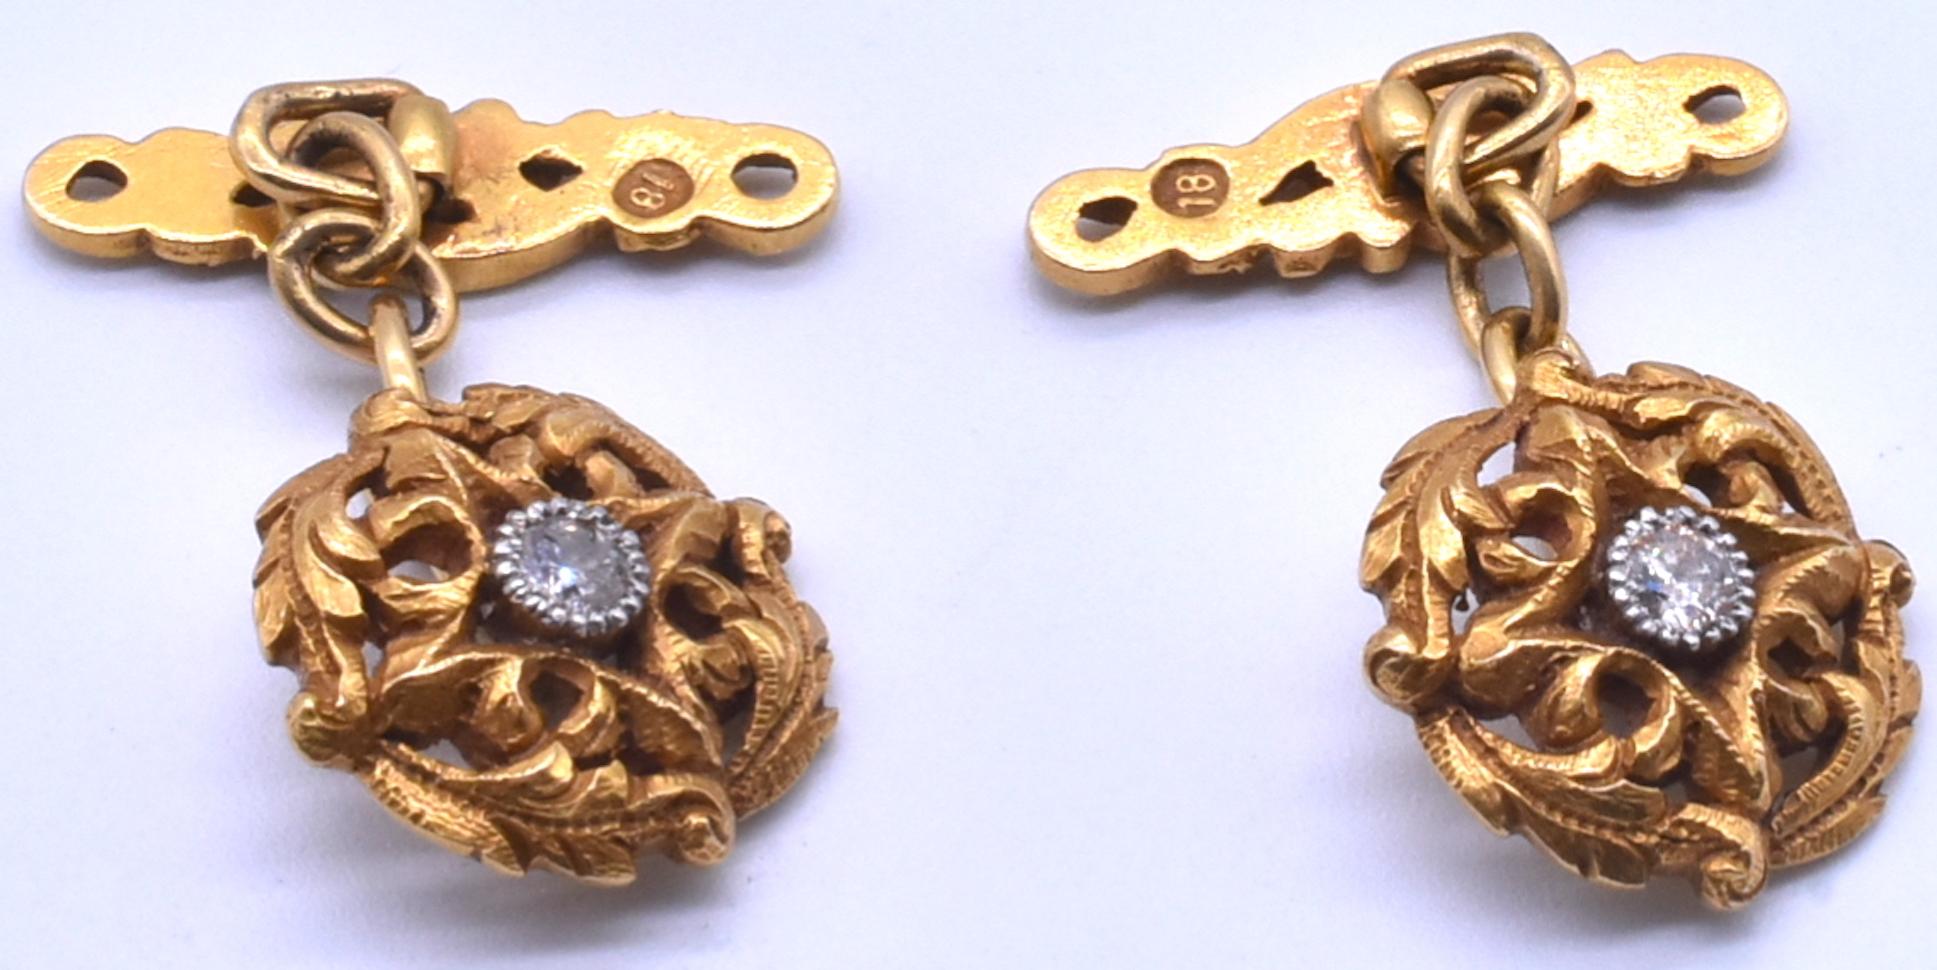 Gemelli da polso antichi Art Nouveau in oro 18 carati e diamanti del 1900 circa, un grande regalo per un uomo speciale.